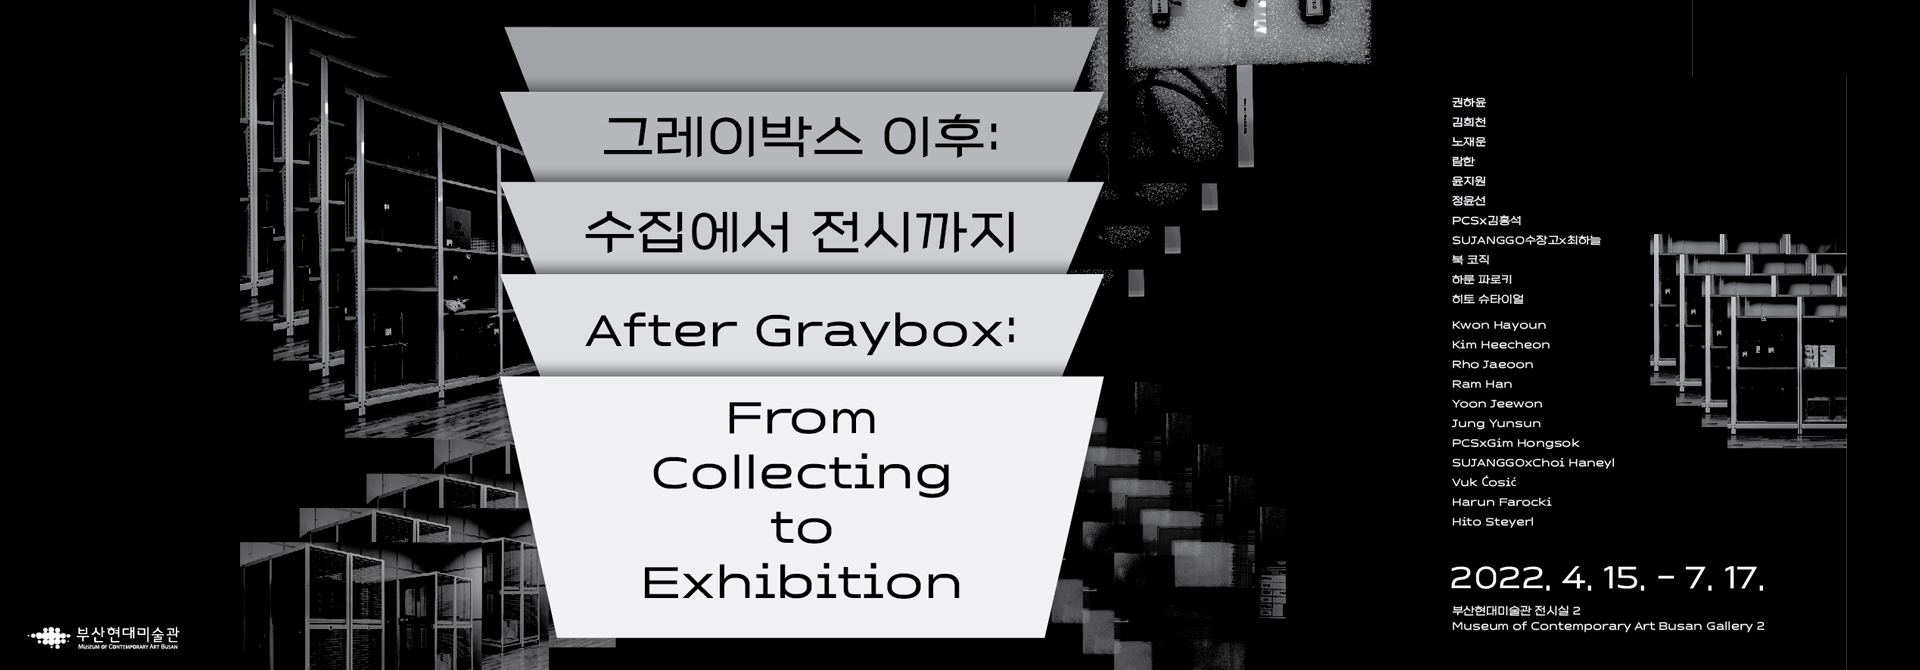 그레이박스 이후 :
수집에서 전시까지
After Graybox:
From Collecting to Exhibition